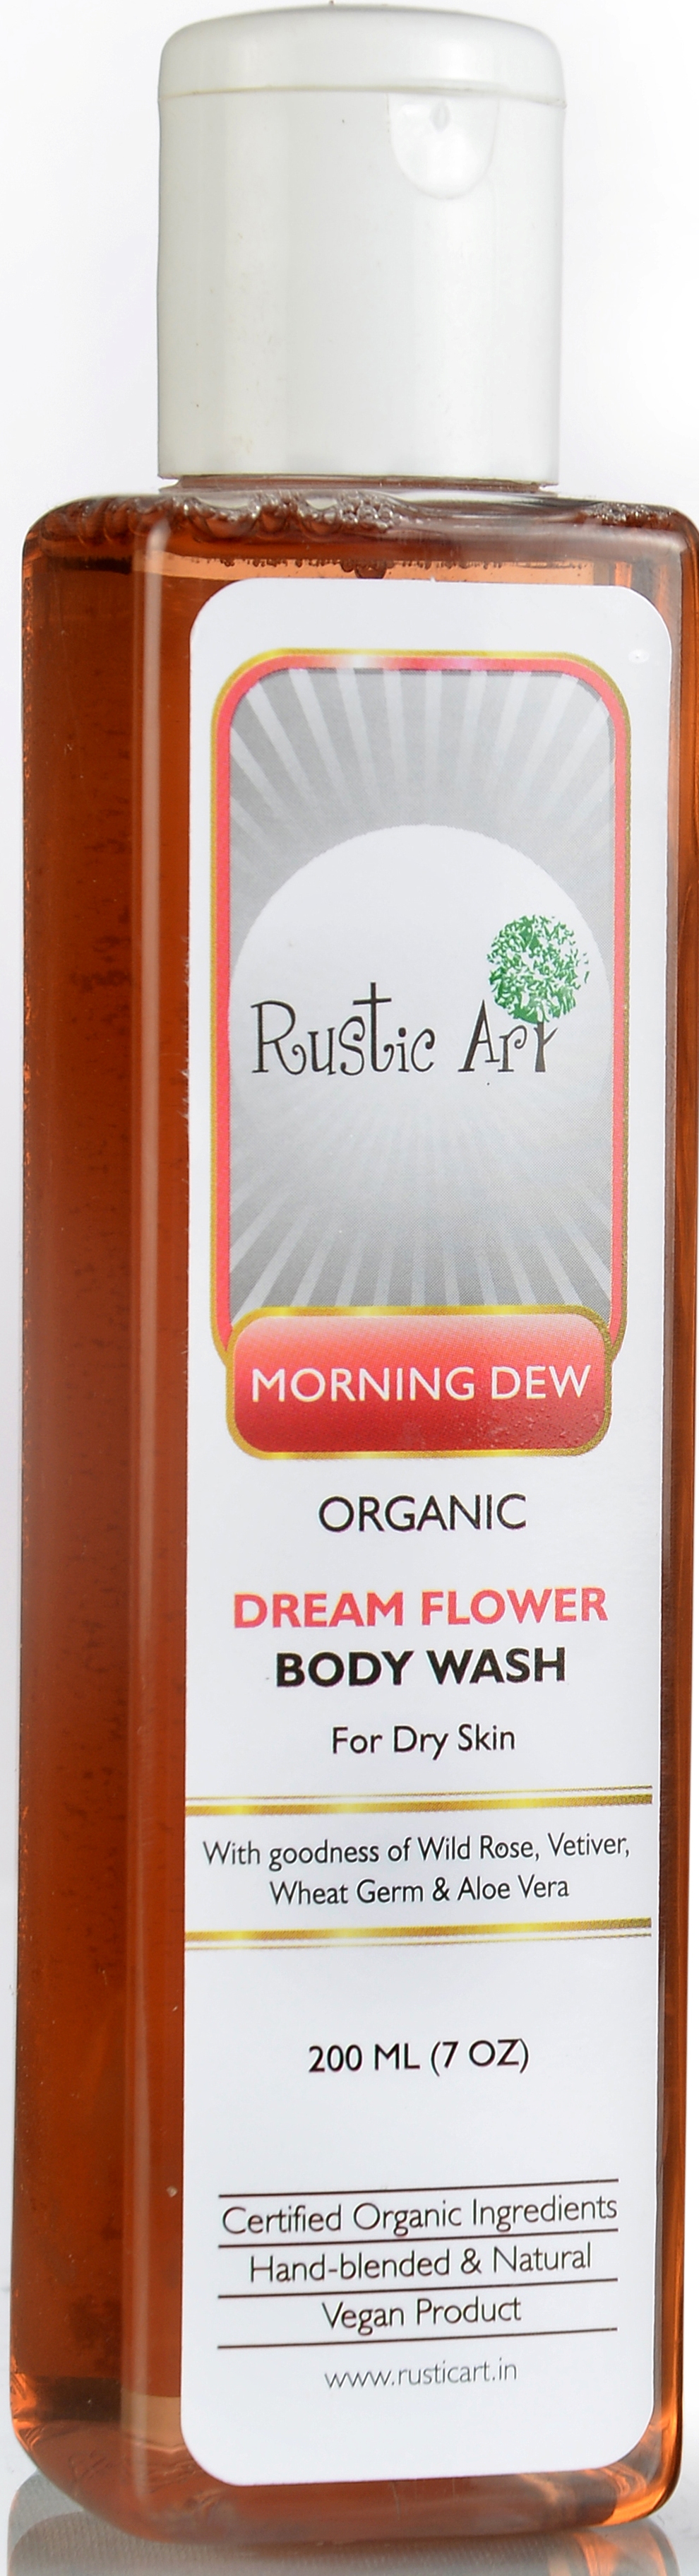 Rustic Art Organic Dream Flower Body Wash